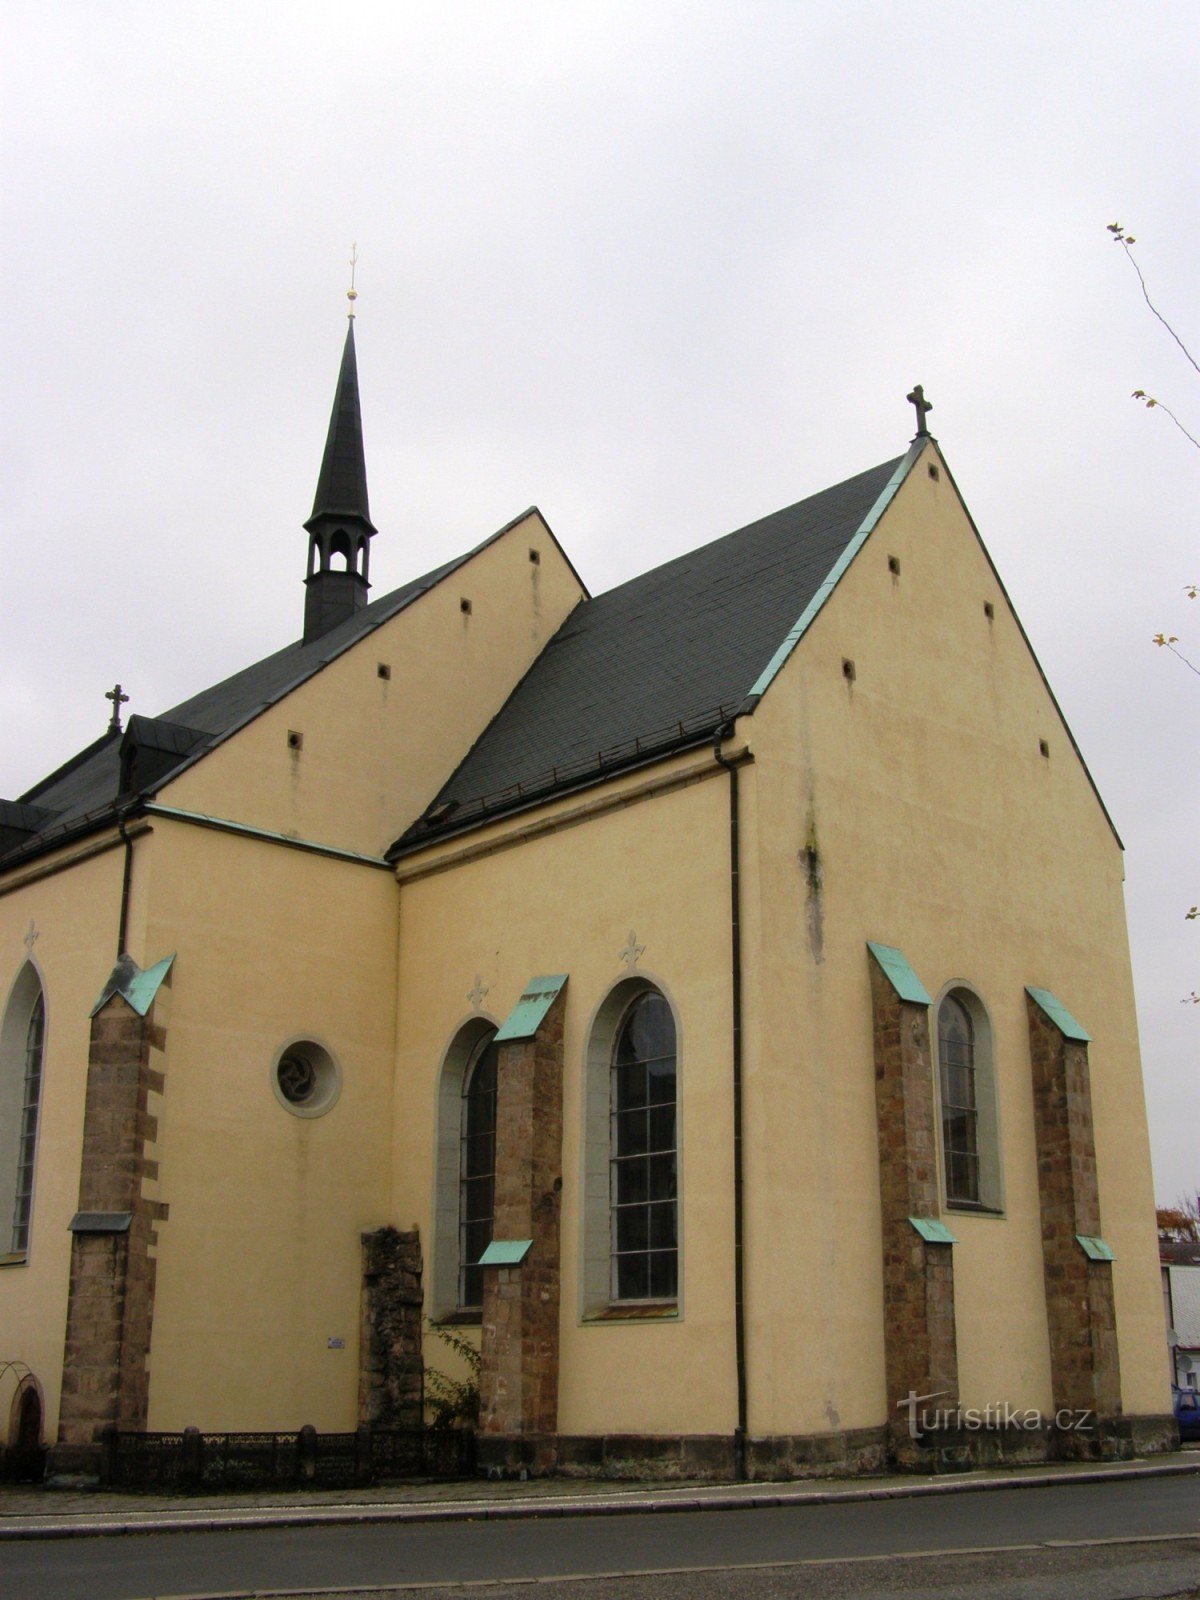 Dvur Králové - Biserica Sf. Ioan Botezatorul